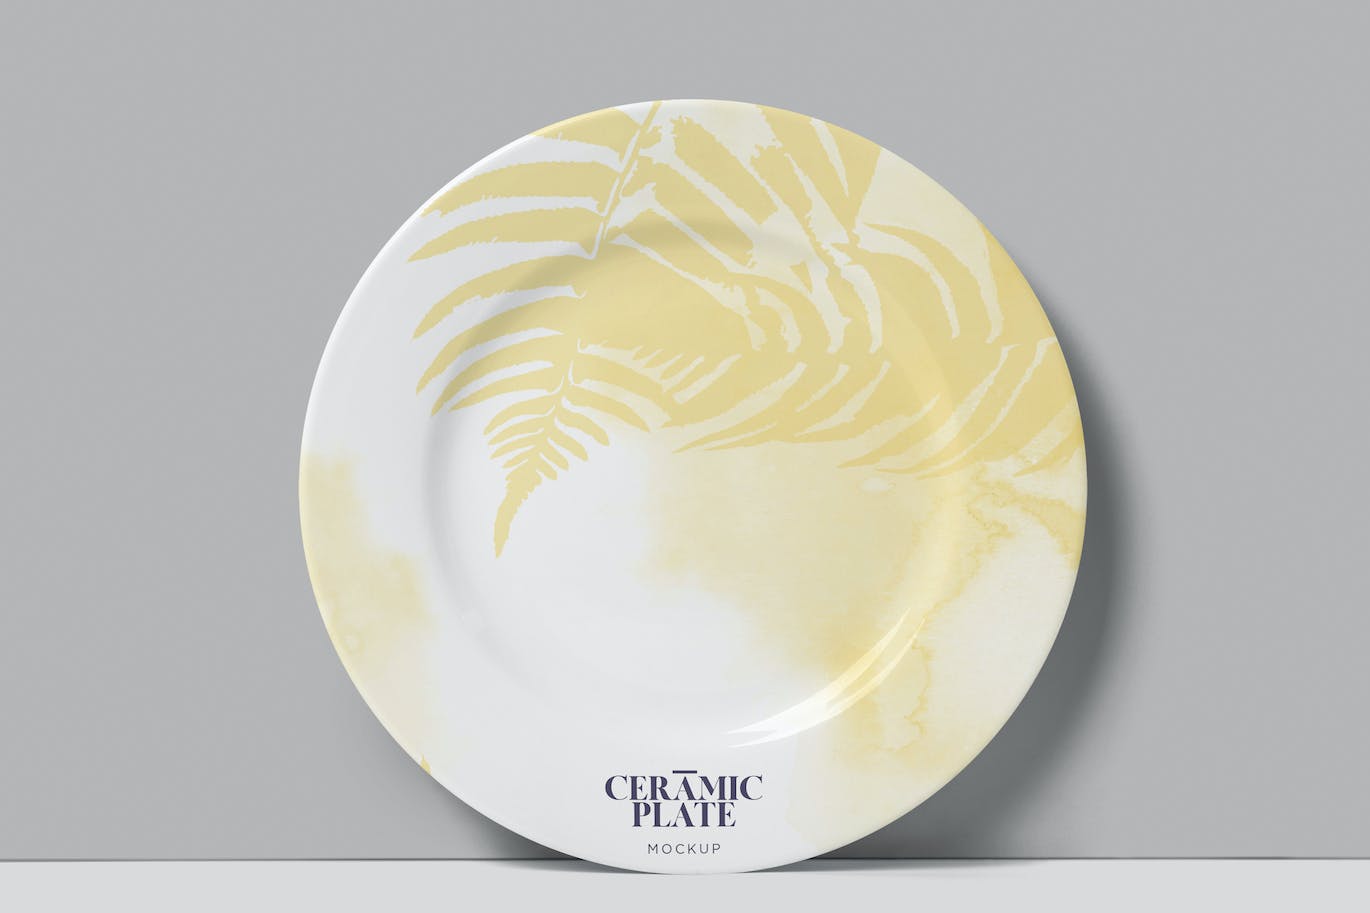 陶瓷盘子陶器品牌设计样机 Ceramic Plate Mockups 样机素材 第1张